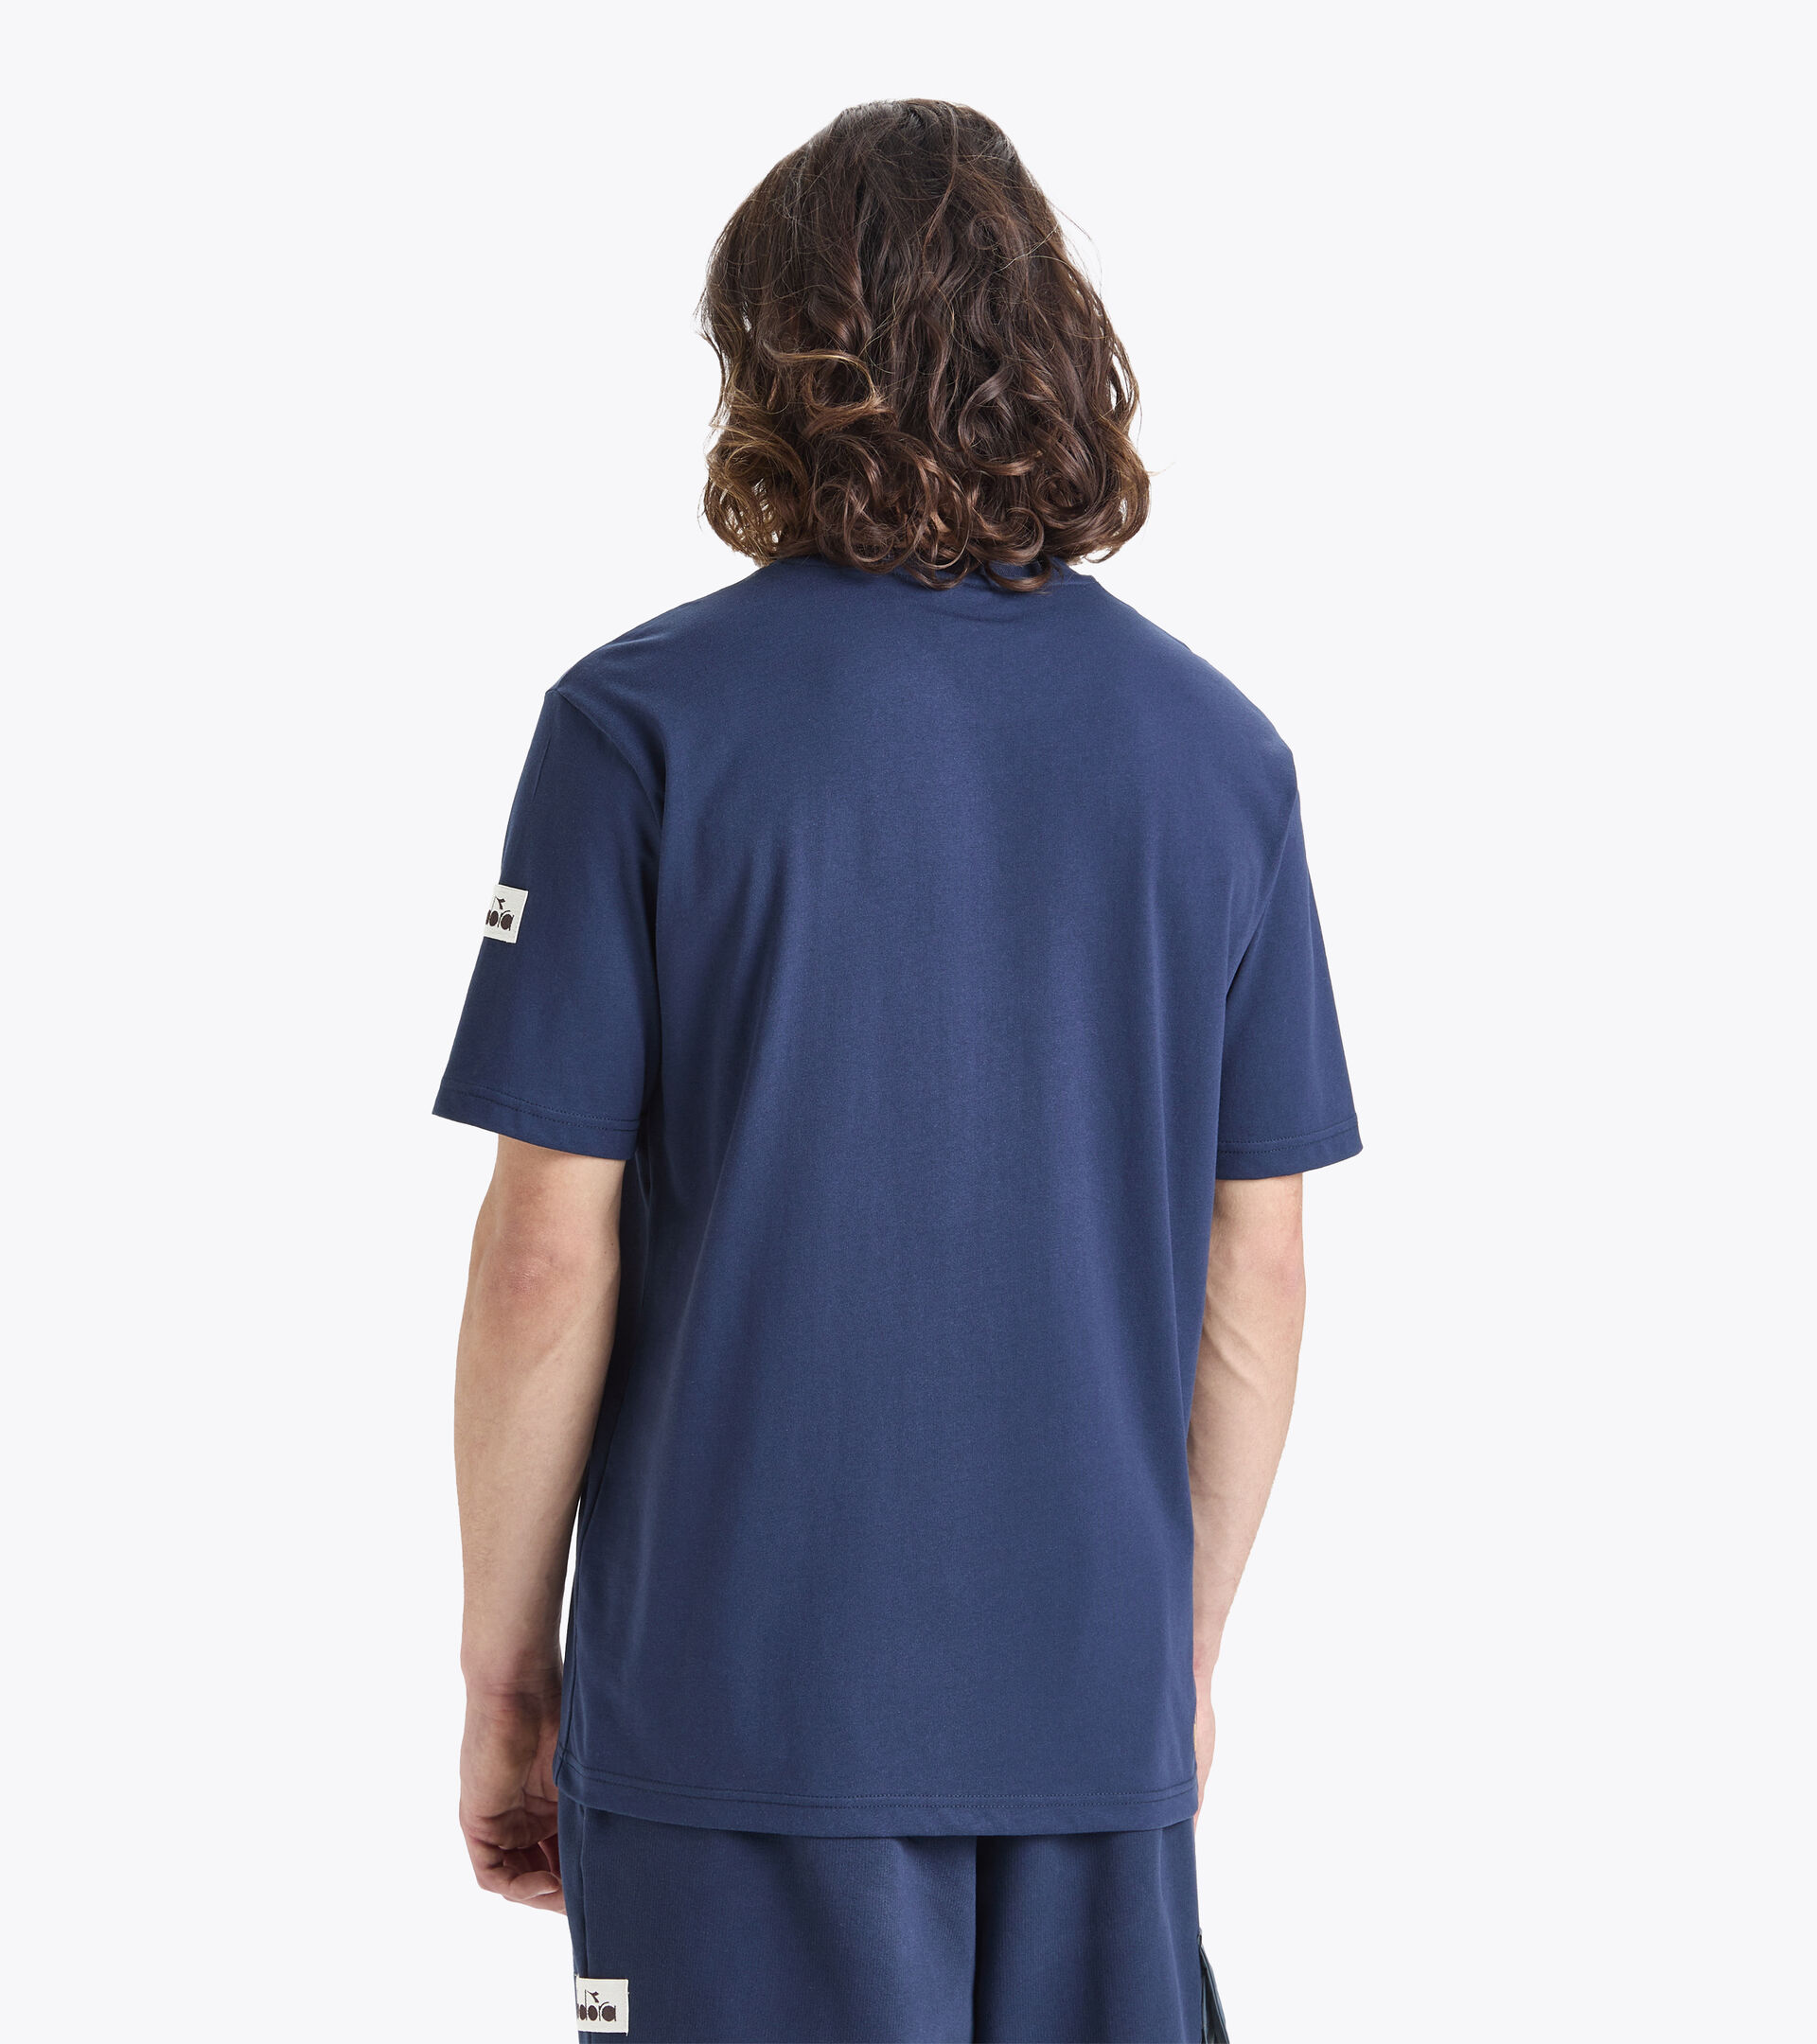 T-shirt- Made in Italy - Homme T-SHIRT SS 2030 BLEU CORSAIRE - Diadora